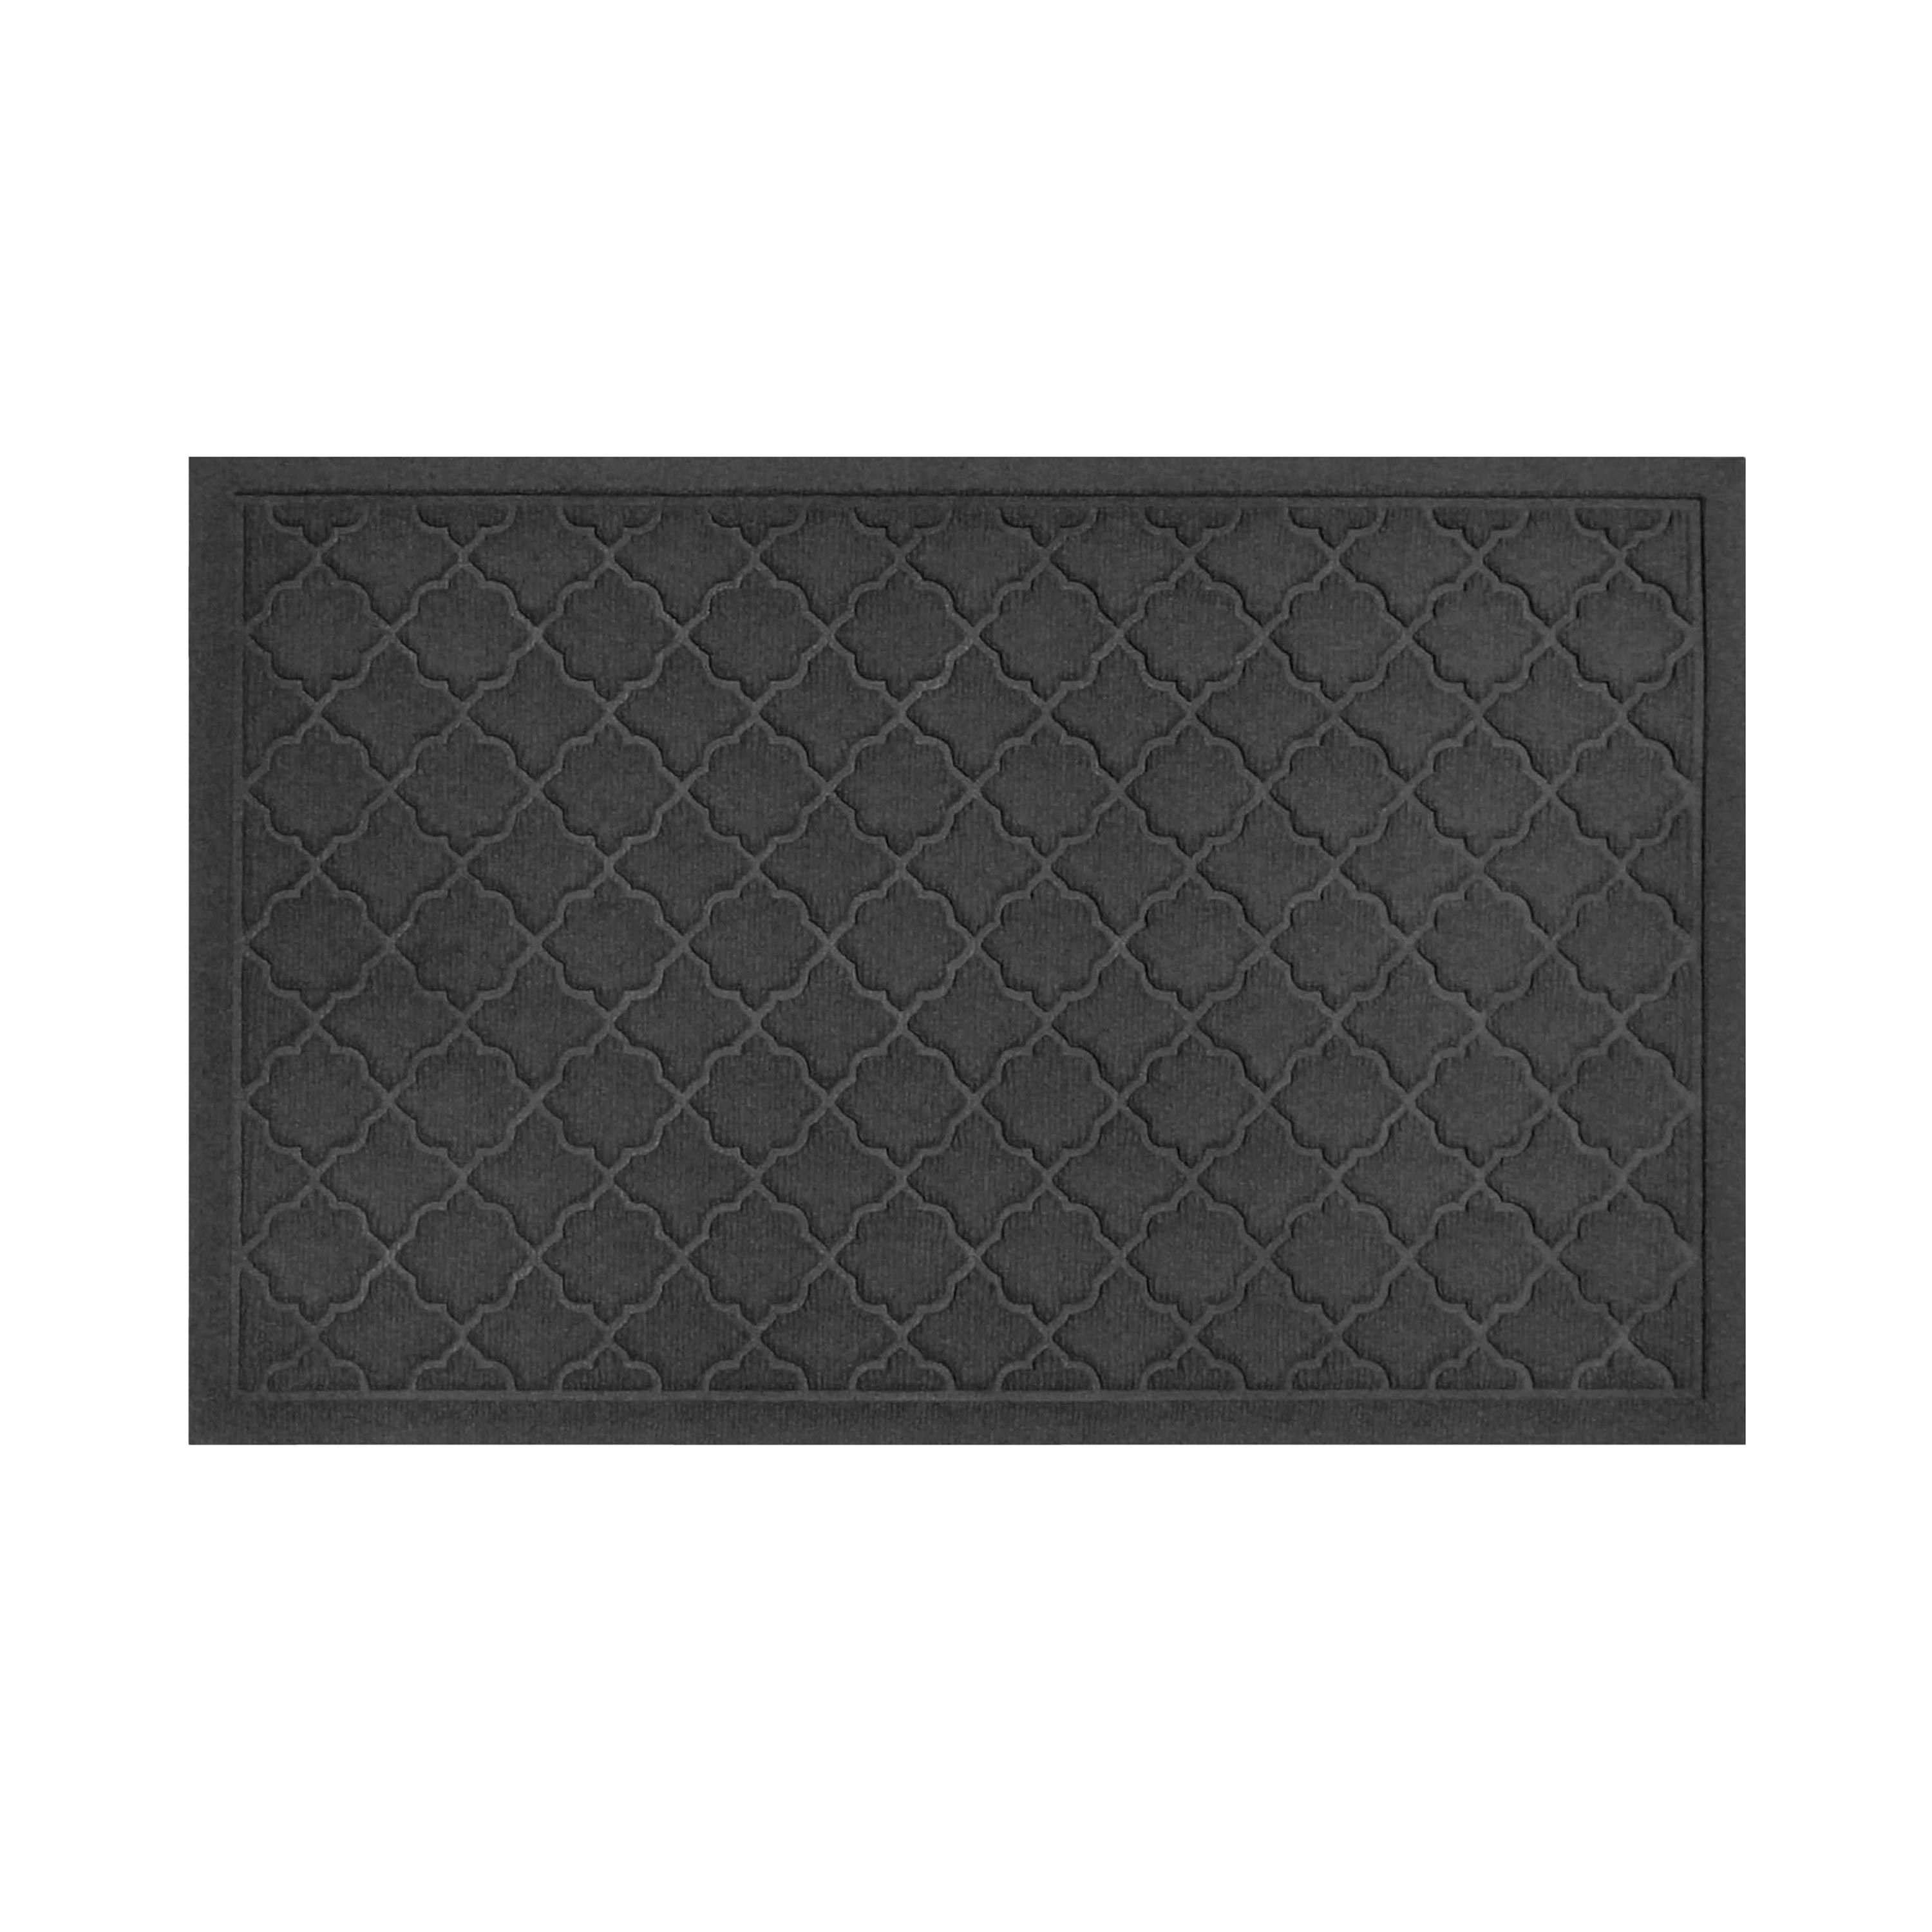 Waterhog Indoor/Outdoor Geometric Doormat, 34" x 52" - Charcoal